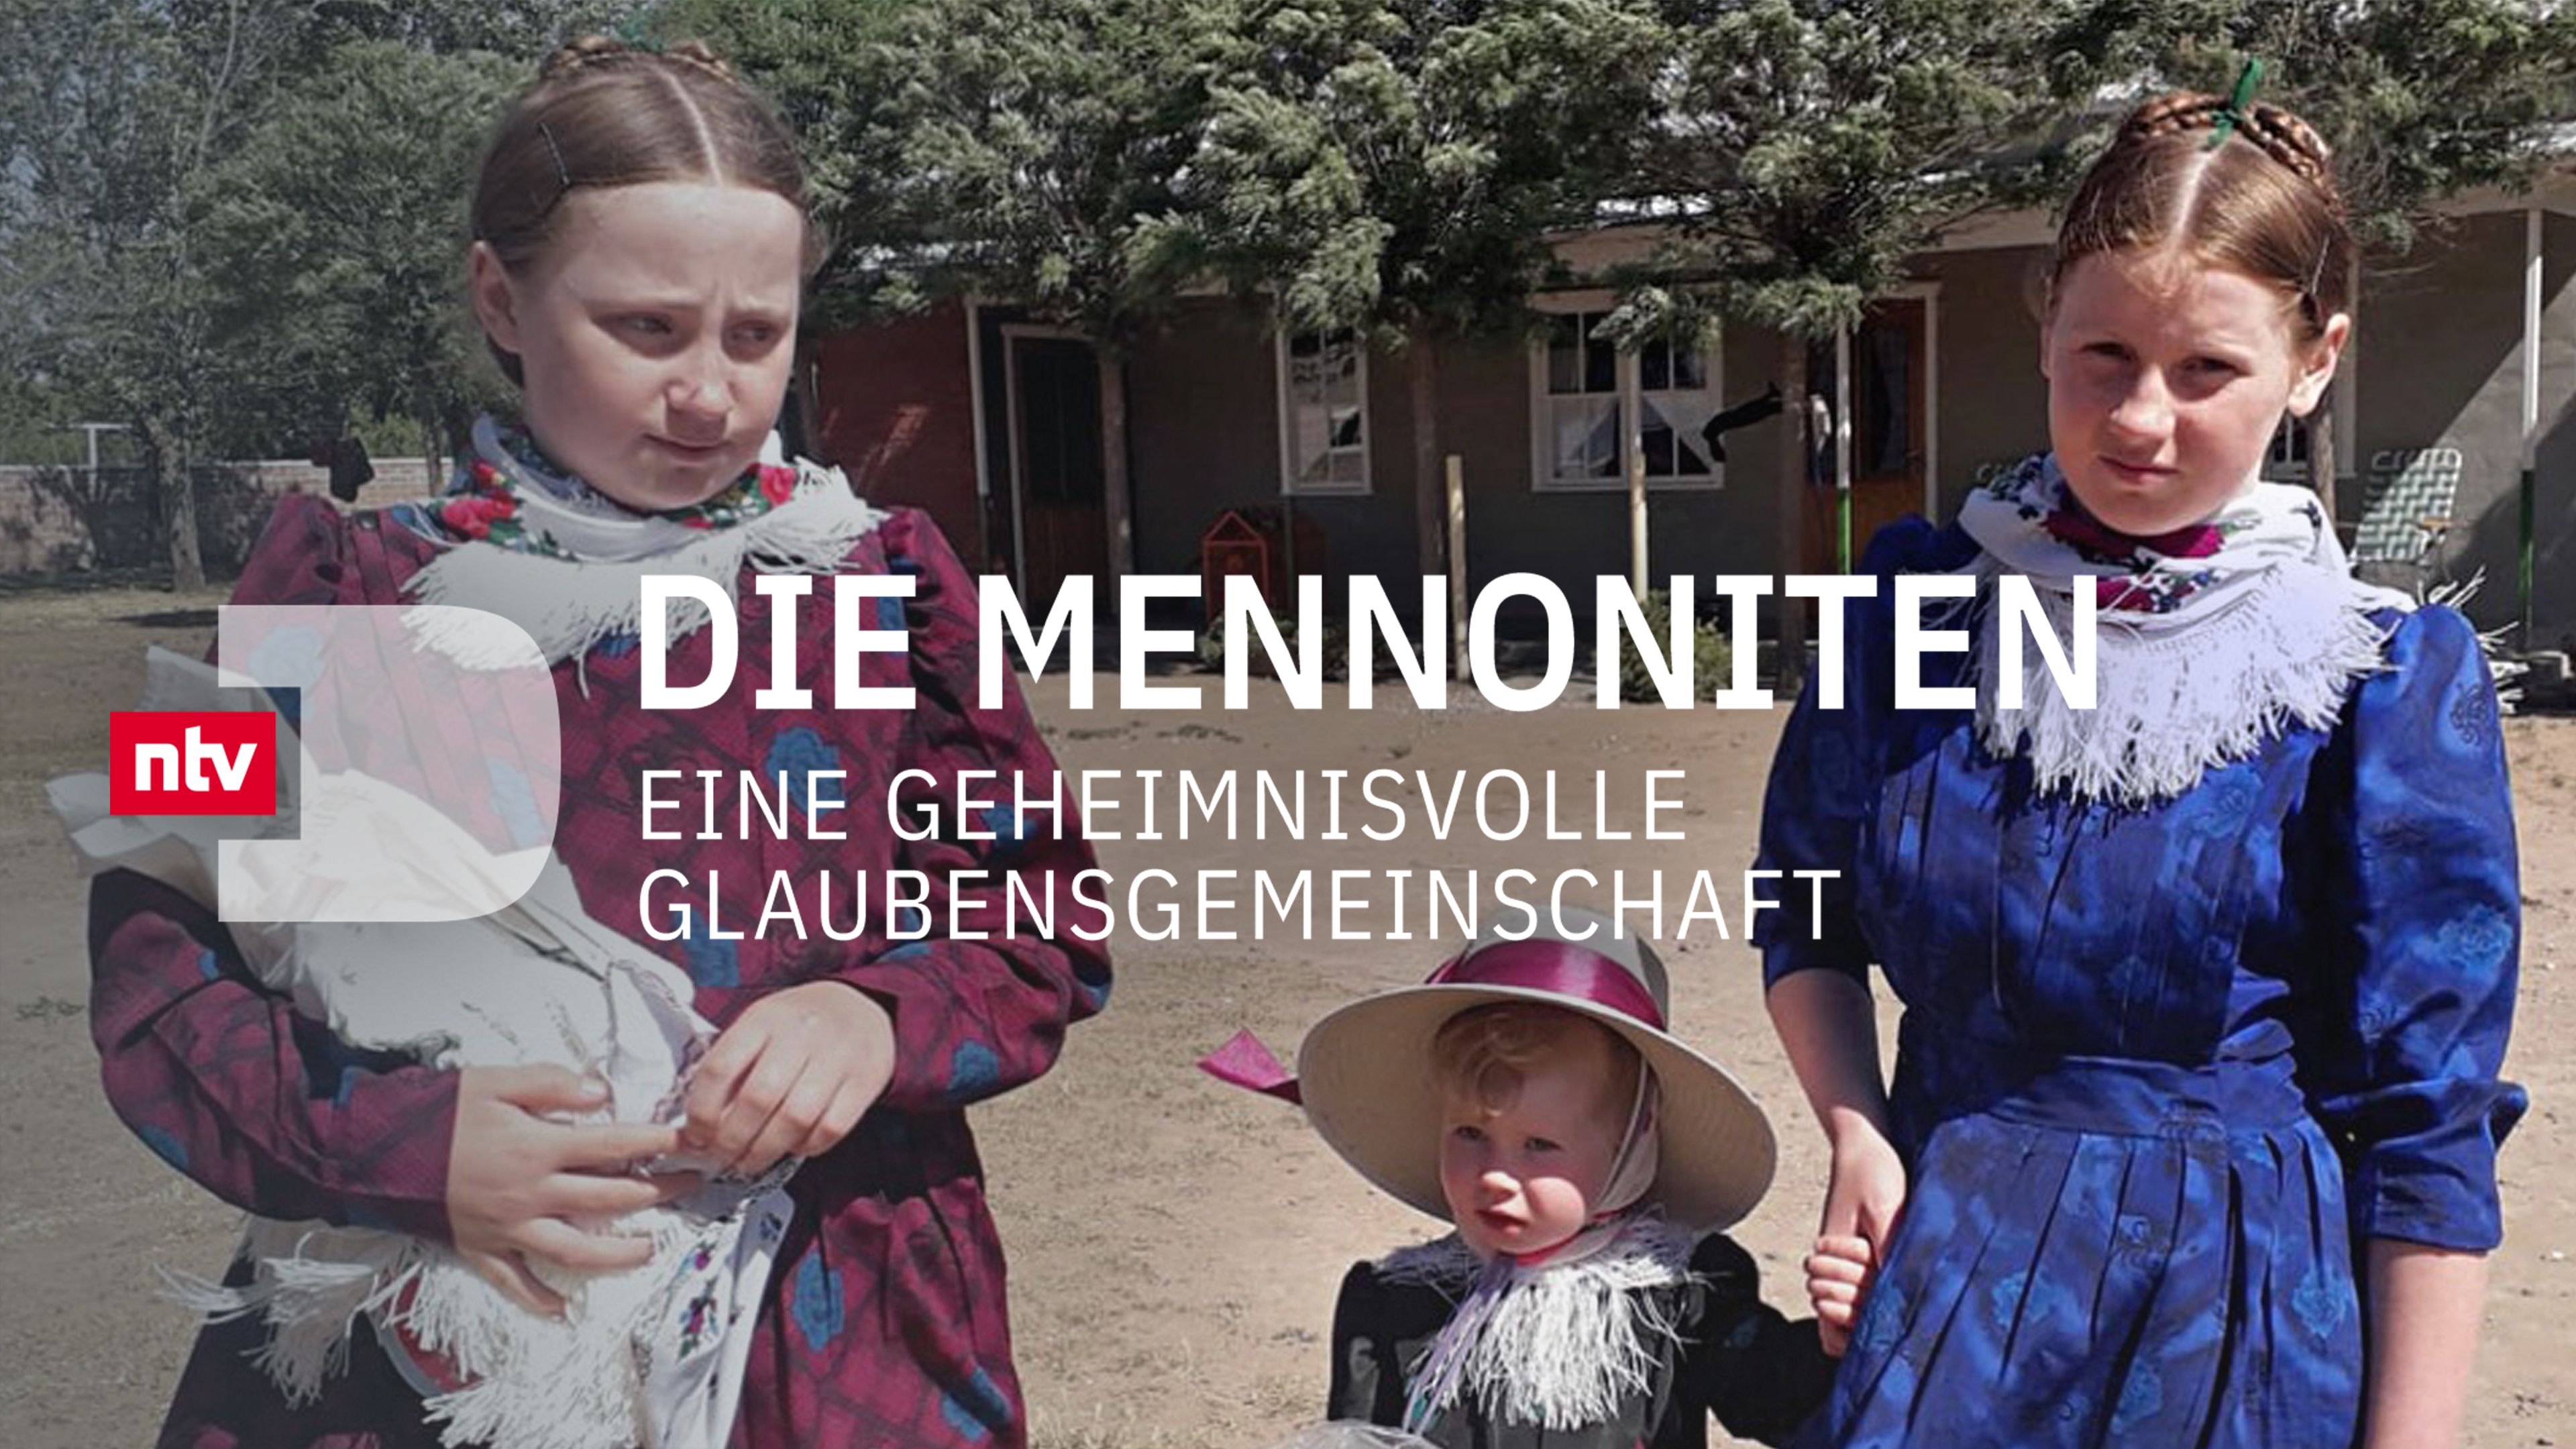 Die Mennoniten - Eine geheimnisvolle Glaubensgemeinschaft